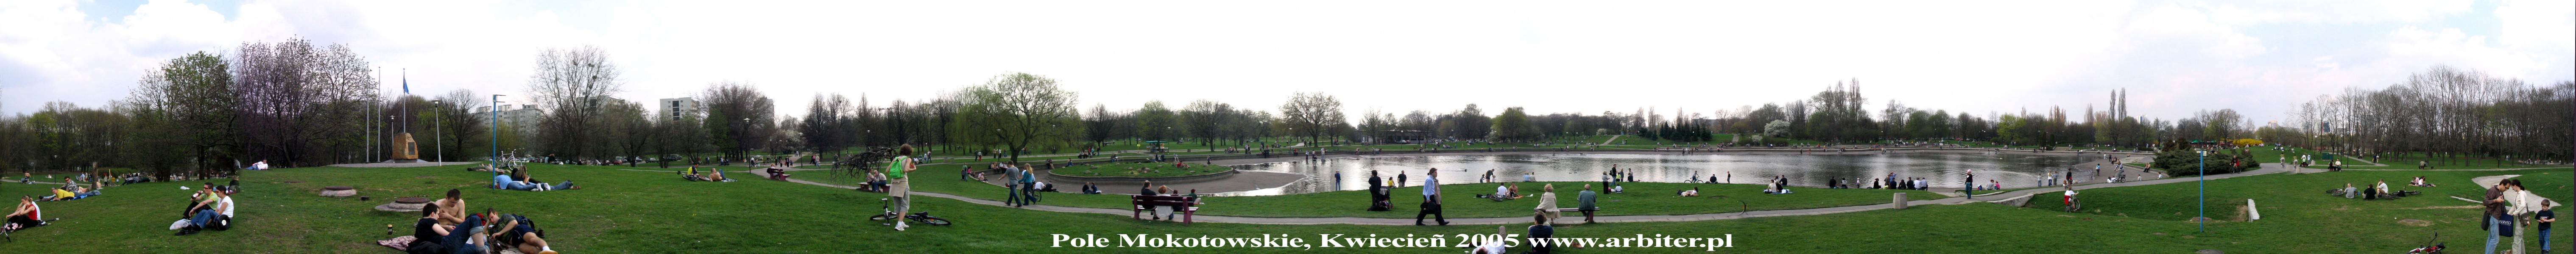 Pole Mokotowskie, Warszawa 17 kwietnia 2005. Tego dnia napełniano jeziorko wodą. ...